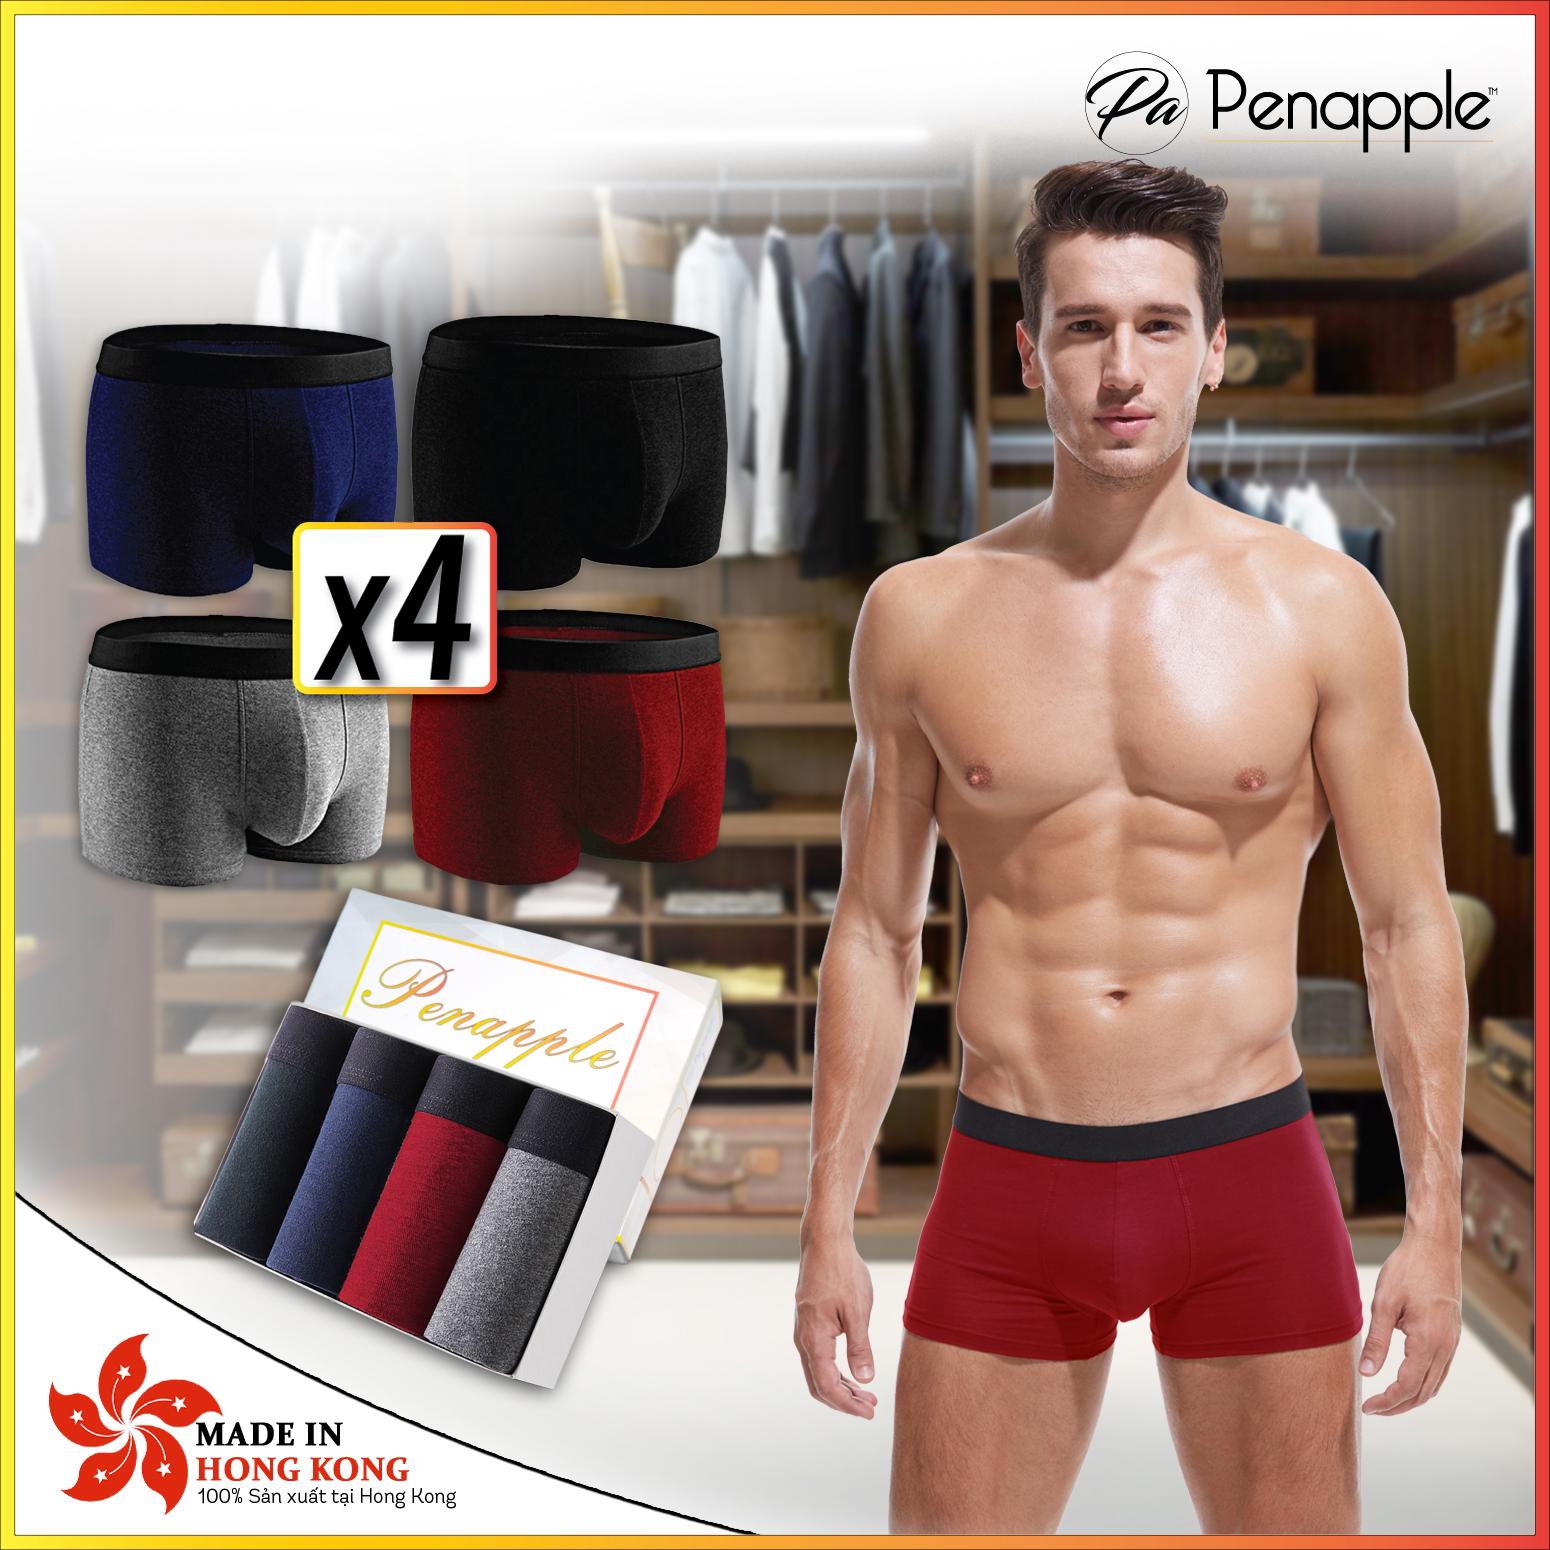 1 Hộp 4 quần lót nam 4 MÀU (đen, xanh, xám, đỏ) - PEN APPLE ống rộng Cotton cao cấp...